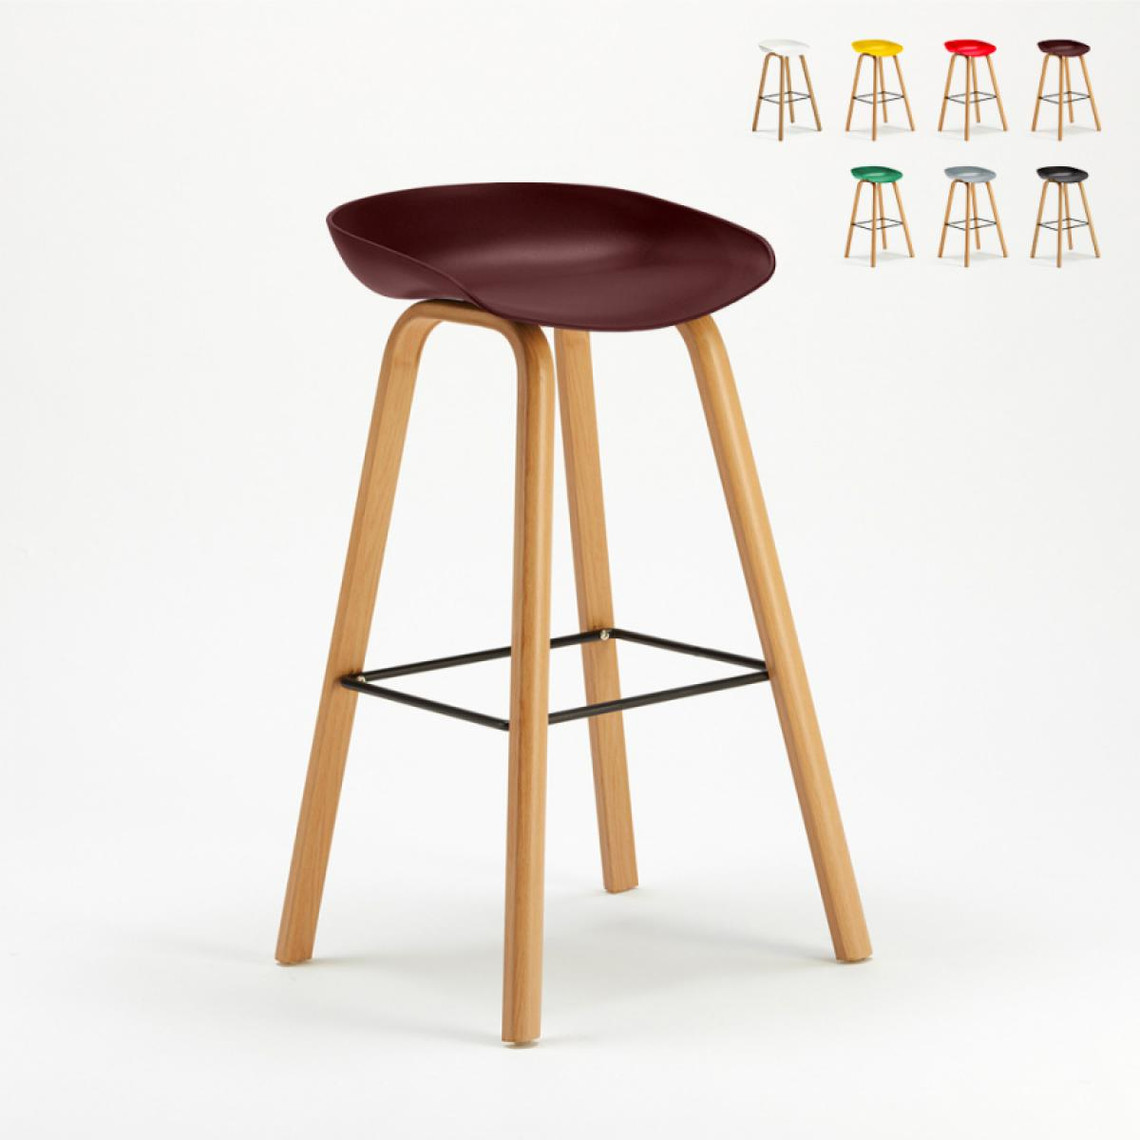 Superstool Tabouret chaise haut pour café et cuisine effet bois Towerwood, Couleur: Marron